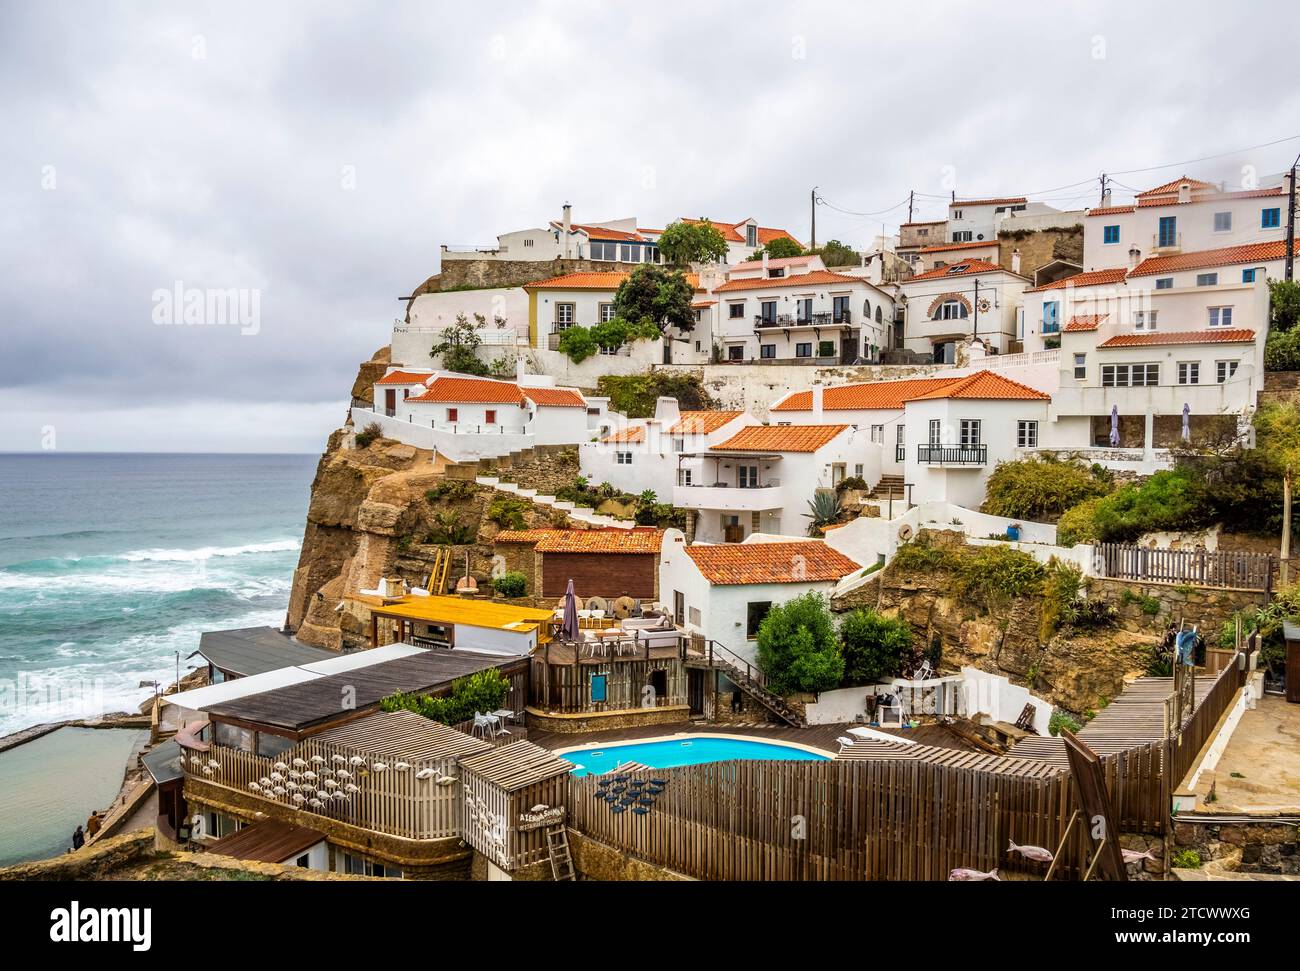 Villaggio dall'aspetto mediterraneo di Azenhas do Mar che significa "mulini ad acqua del mare" sulla costa atlantica nel comune di Sintra, Portogallo. Foto Stock